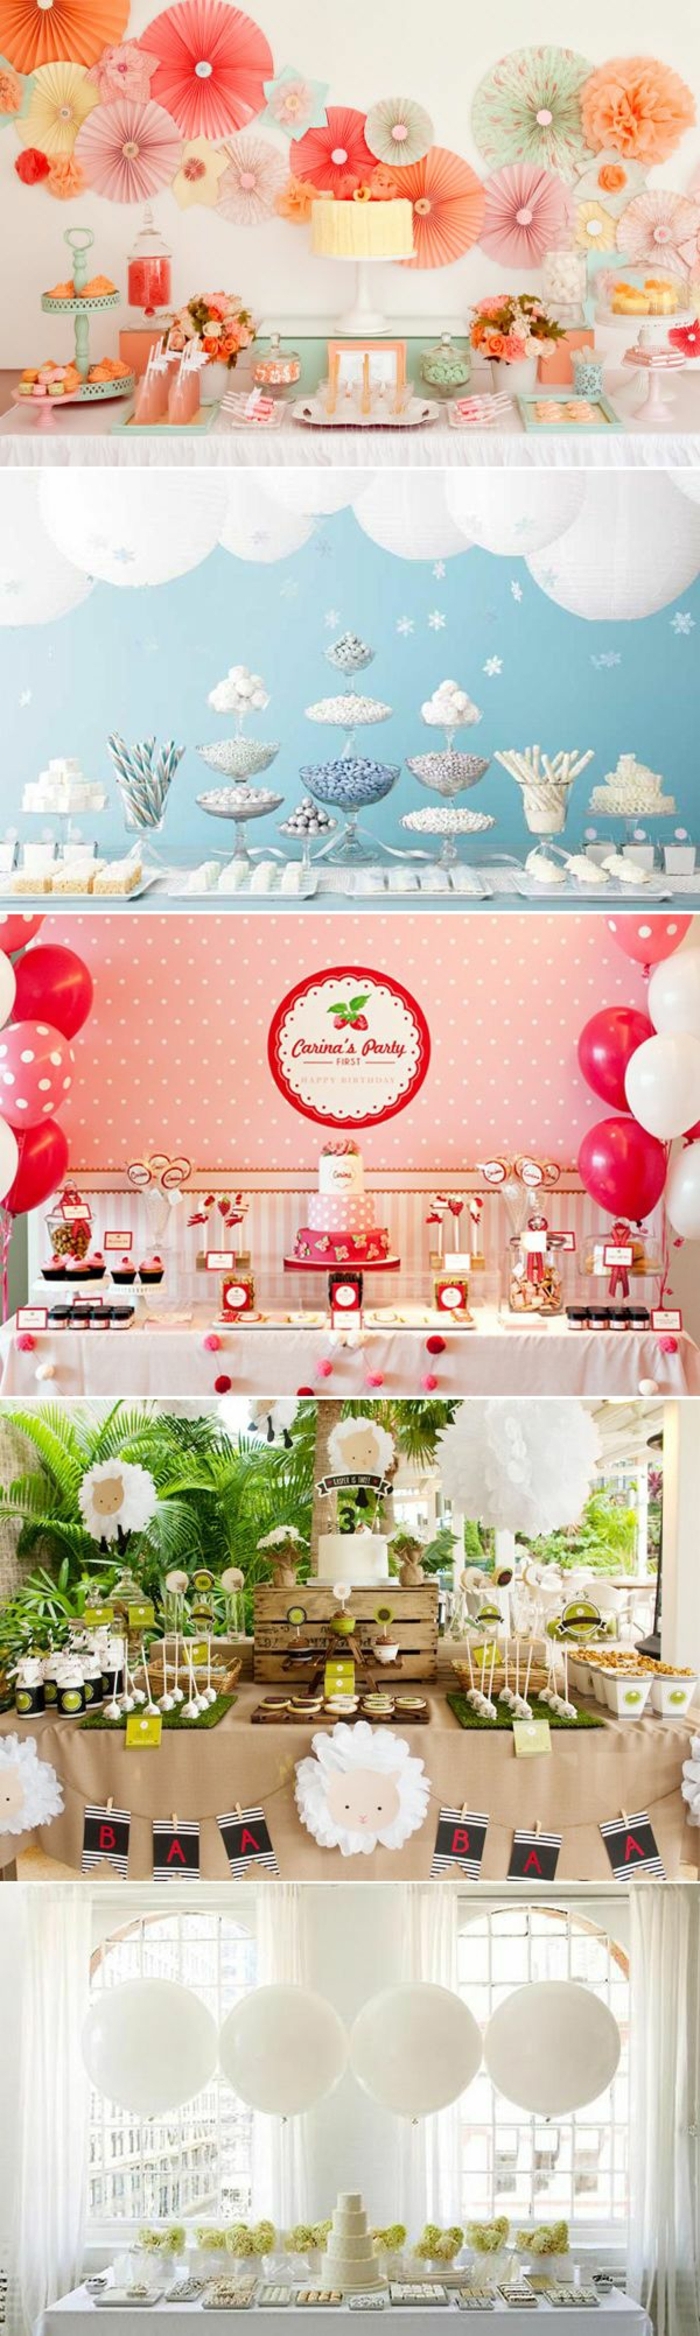 décoration table avec pinatas, lanternes en papier, ballons rouges et blancs, plantes, pelouse artificielle, deco de table anniversaire